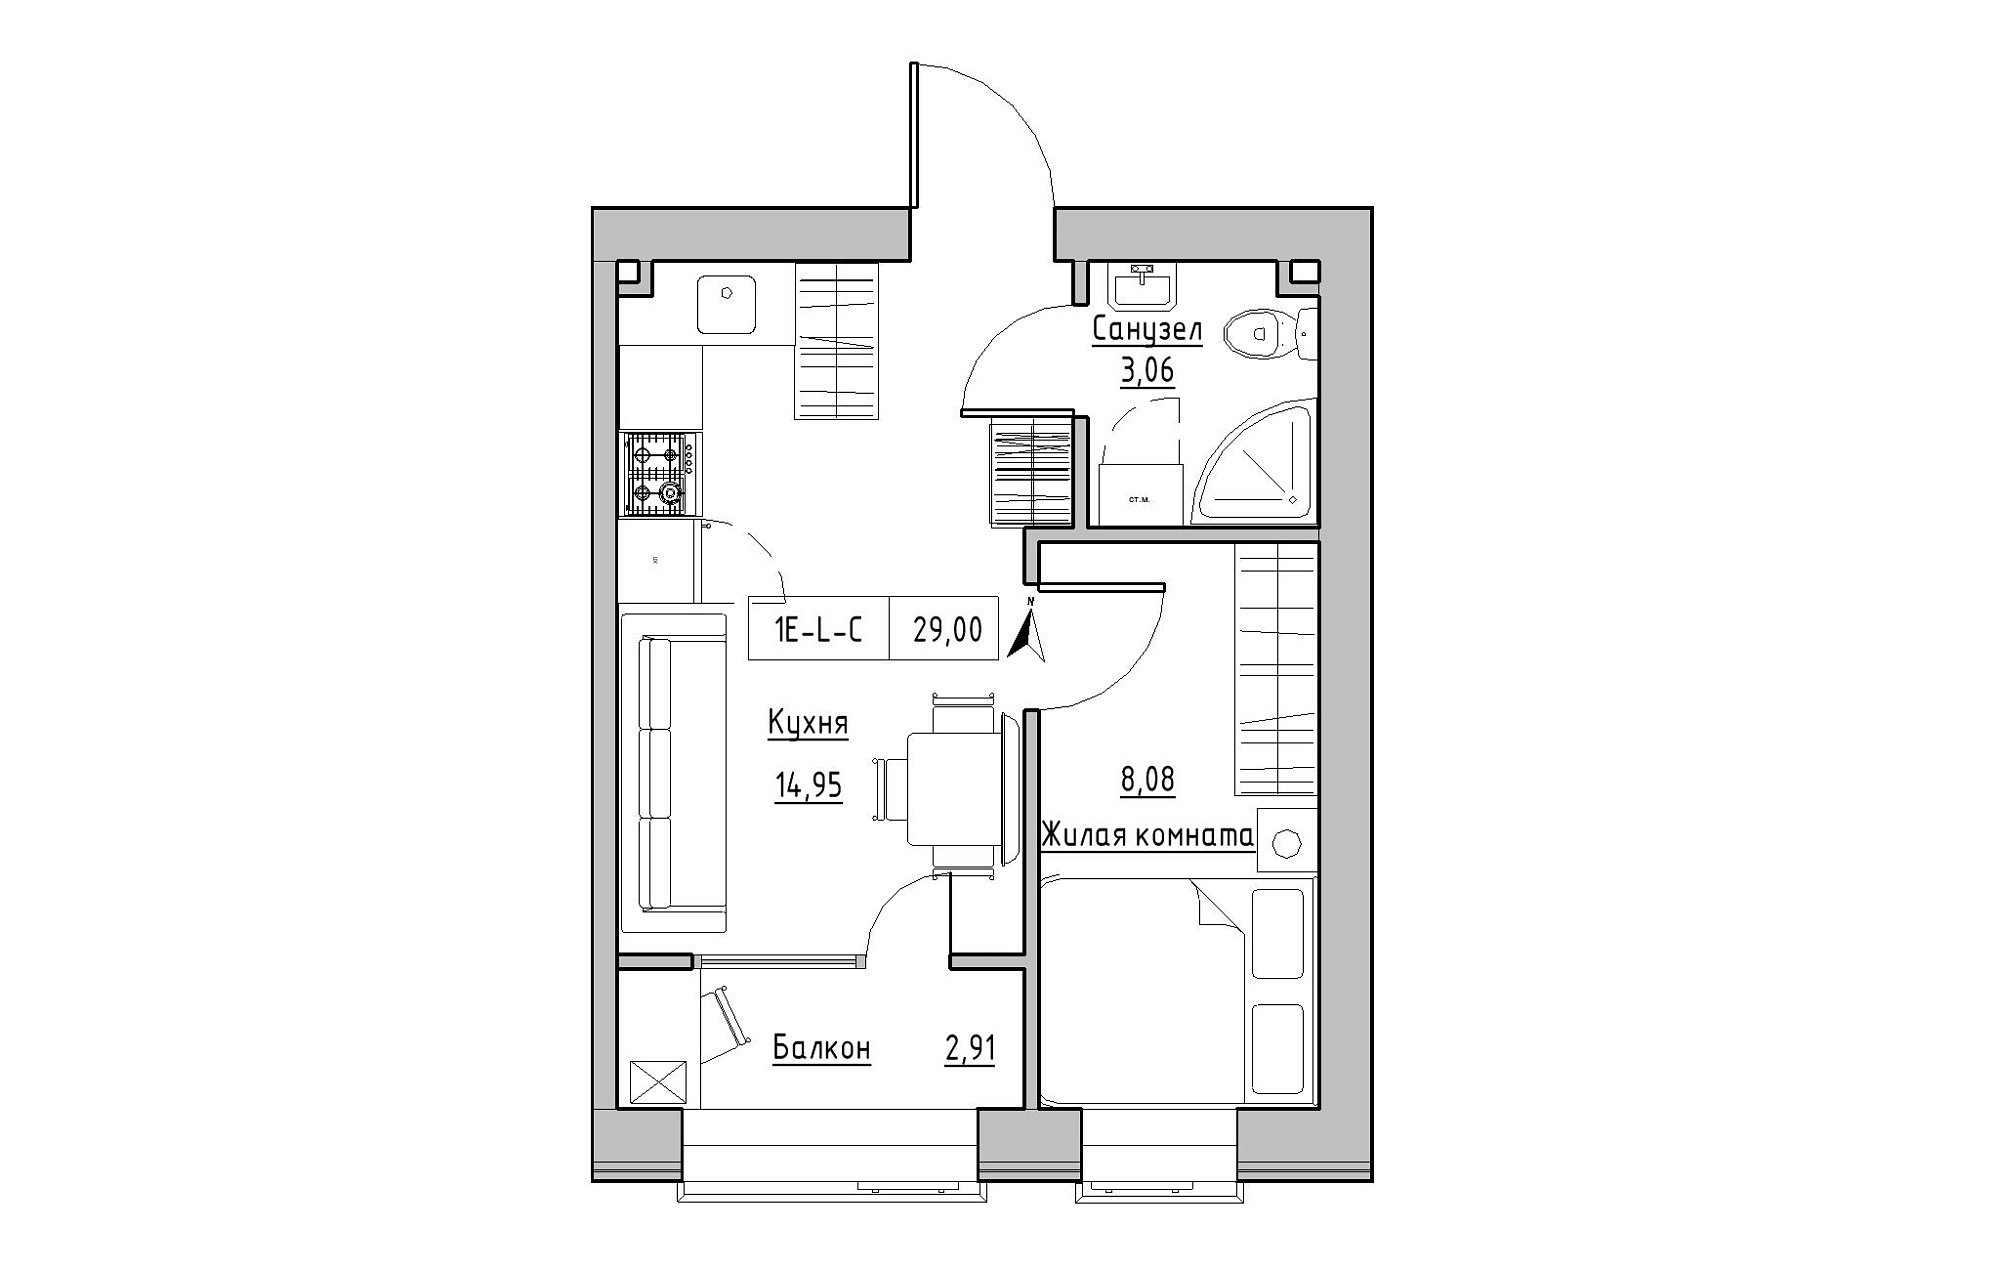 Планировка 1-к квартира площей 29м2, KS-019-02/0009.